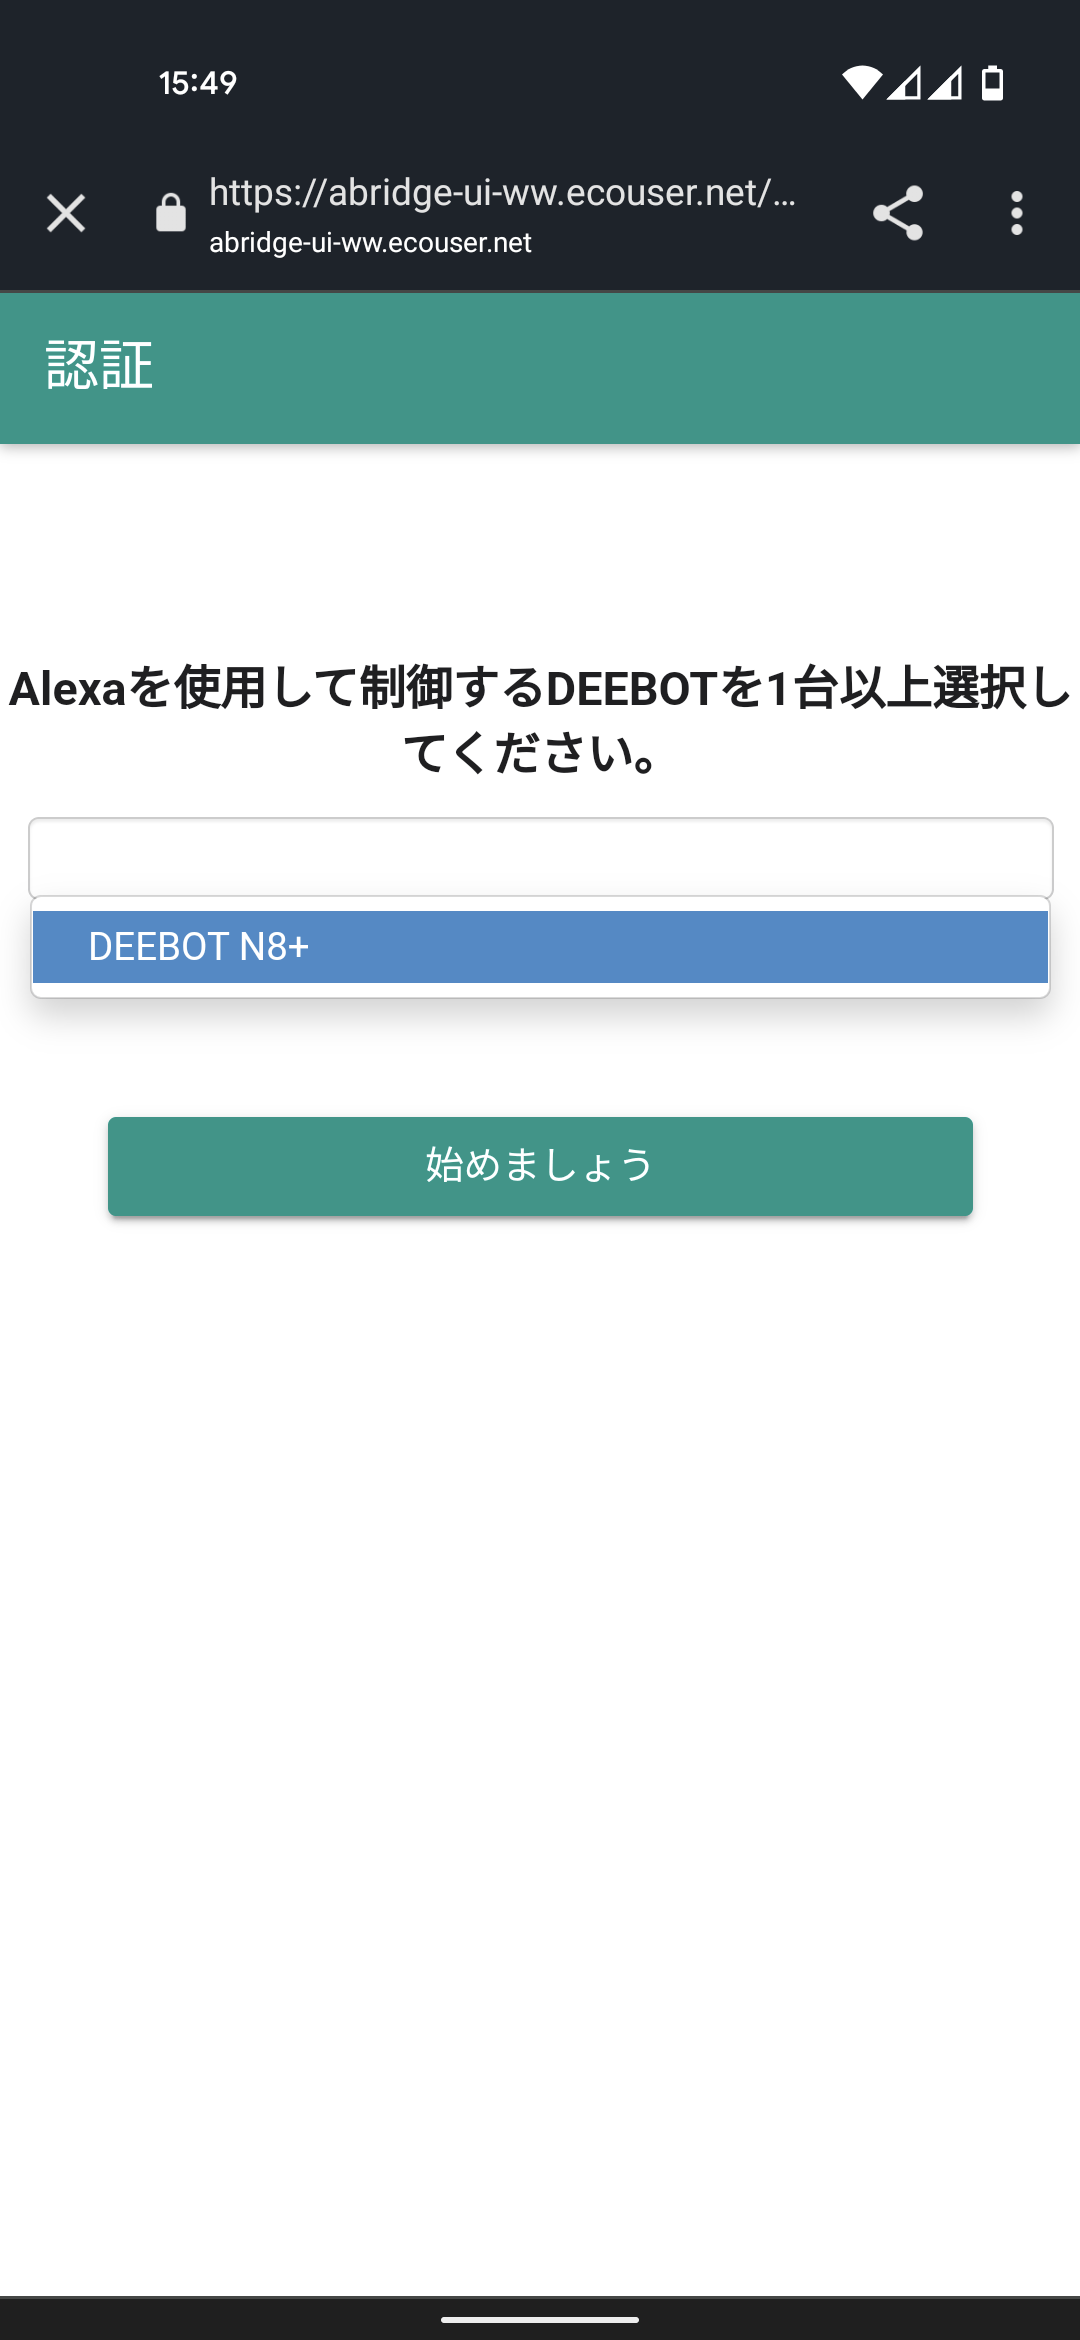 ECOVACS DEEBOT N8+ Amazon.co.jp限定モデル ロボット掃除機 アレクサスキル 連携